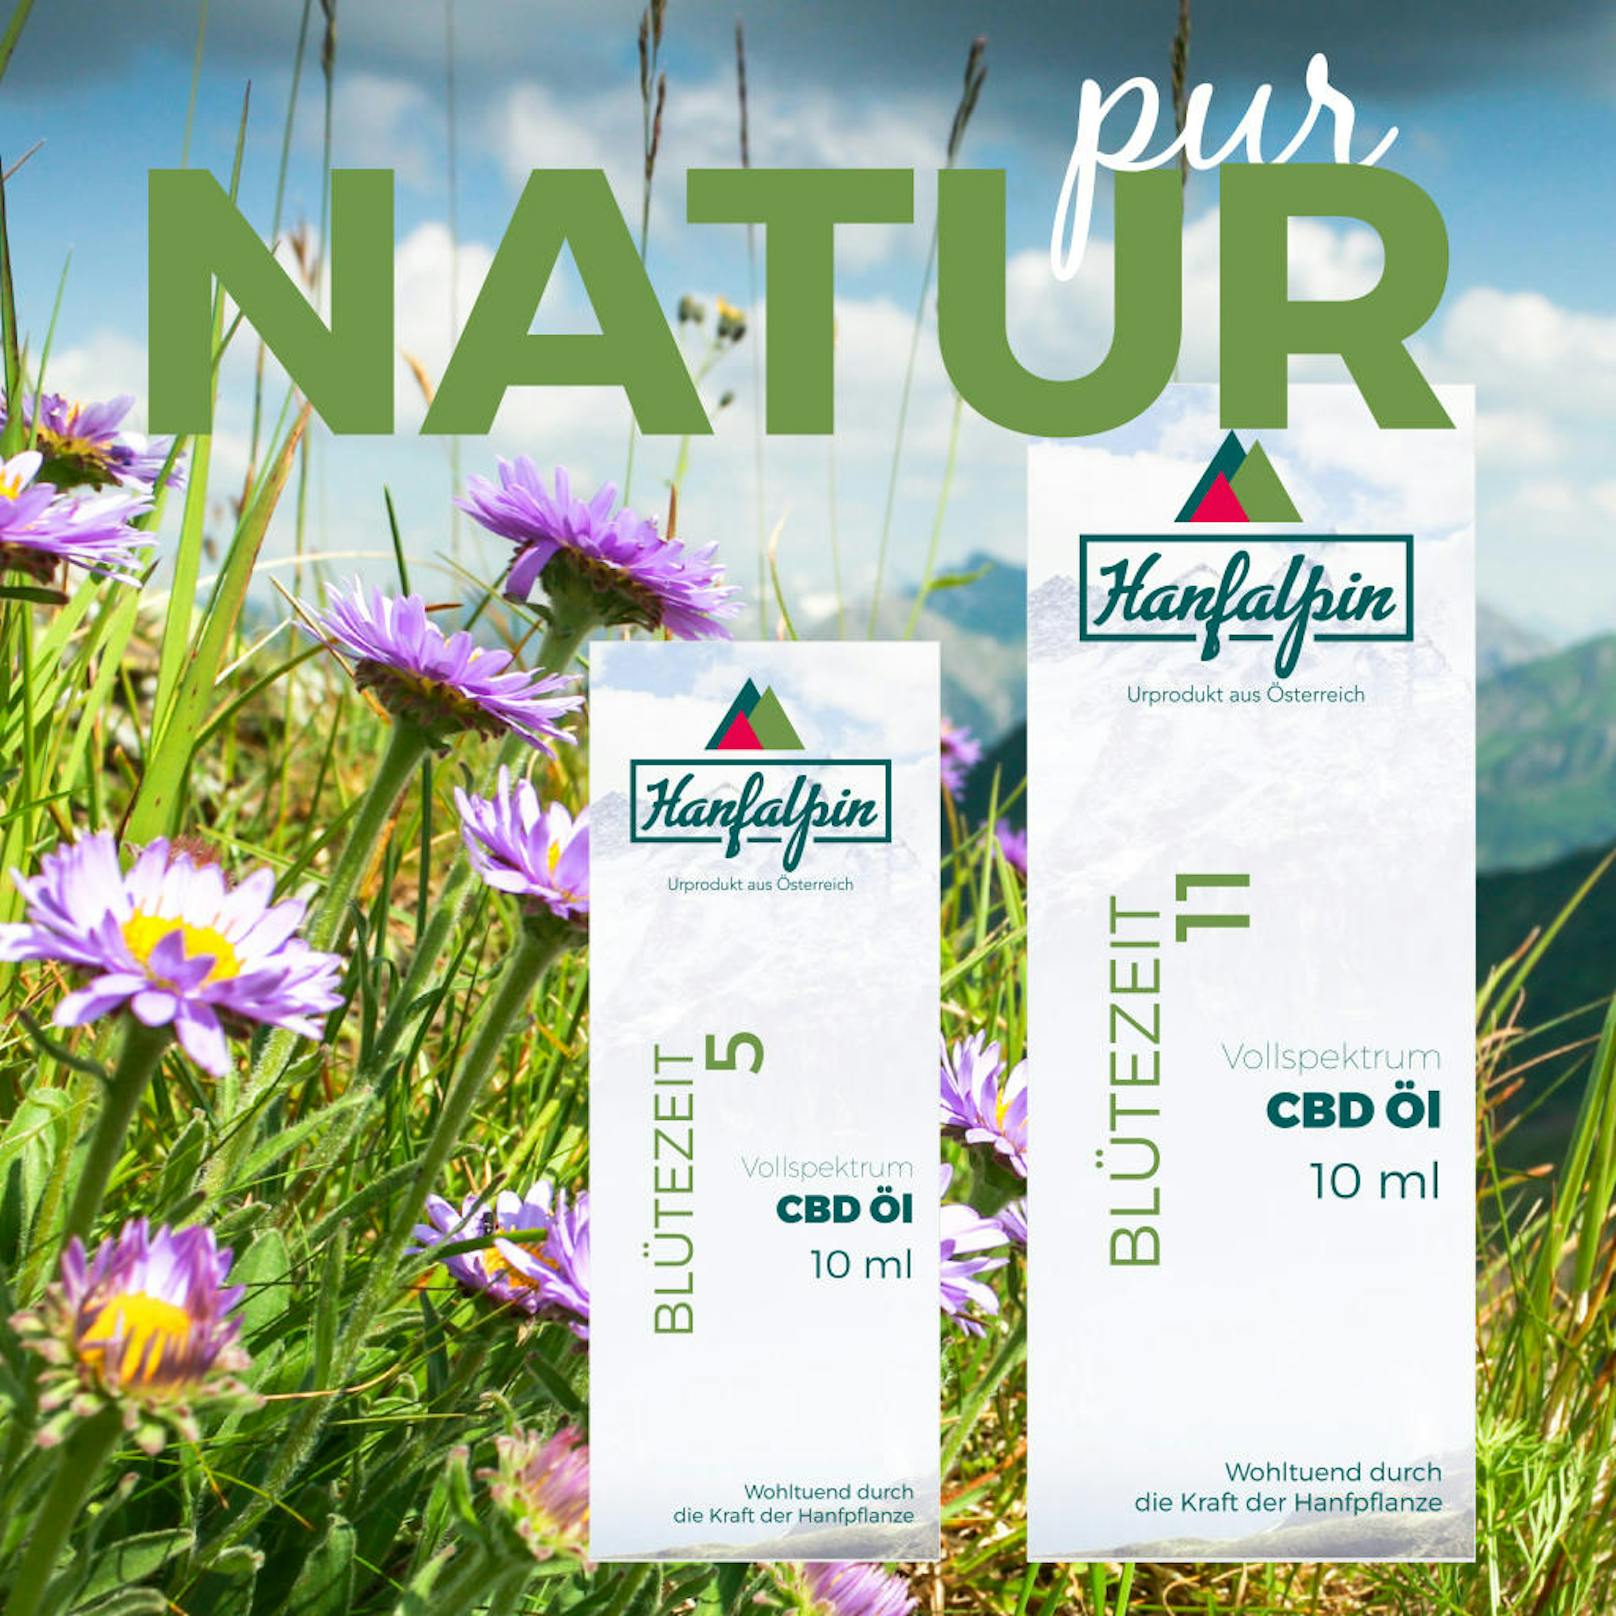 Heute am 02.12. gibt es Bio CBD Produkte von Hanfalpin im Wert von 220 Euro zu gewinnen.